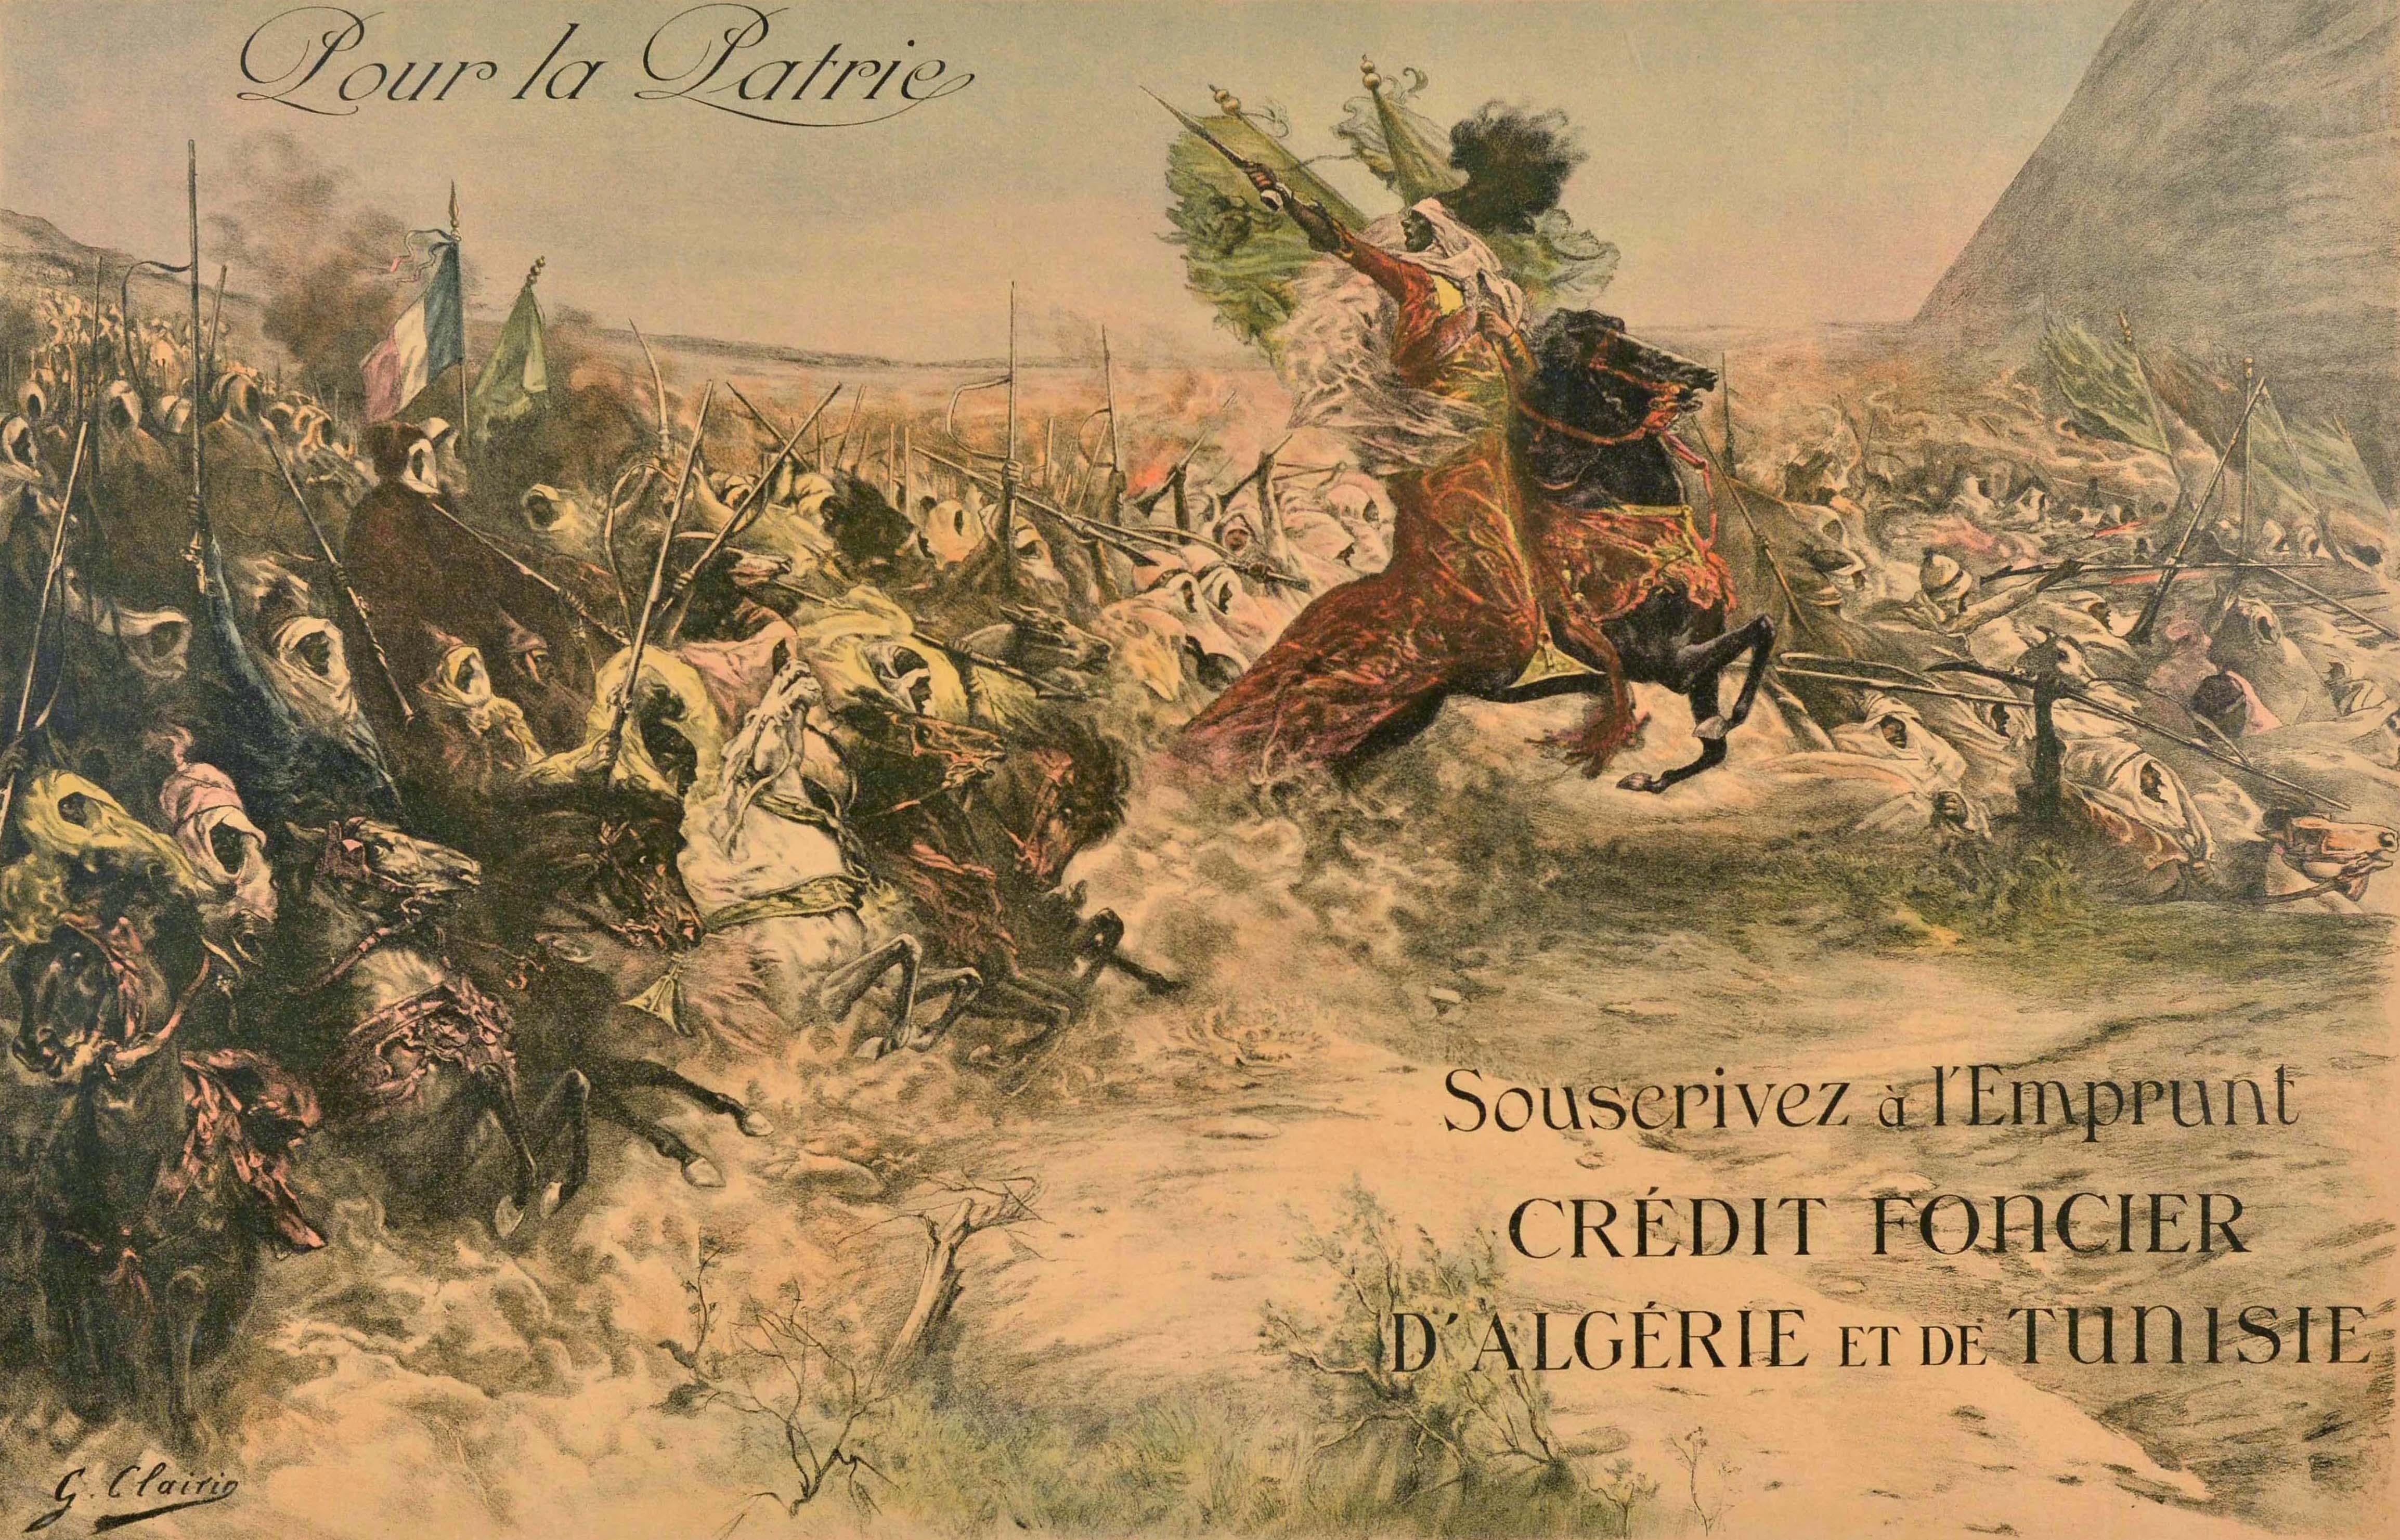 Originales antikes Plakat zur Kriegsanleihe des Ersten Weltkriegs - Pour la Patrie Souscivez a l'Emprunt Credit Foncier d'Algerie et de Tunisie / Für das Vaterland Unterzeichnen Sie die Kreditanleihe von Algerien und Tunesien - mit einer dynamischen